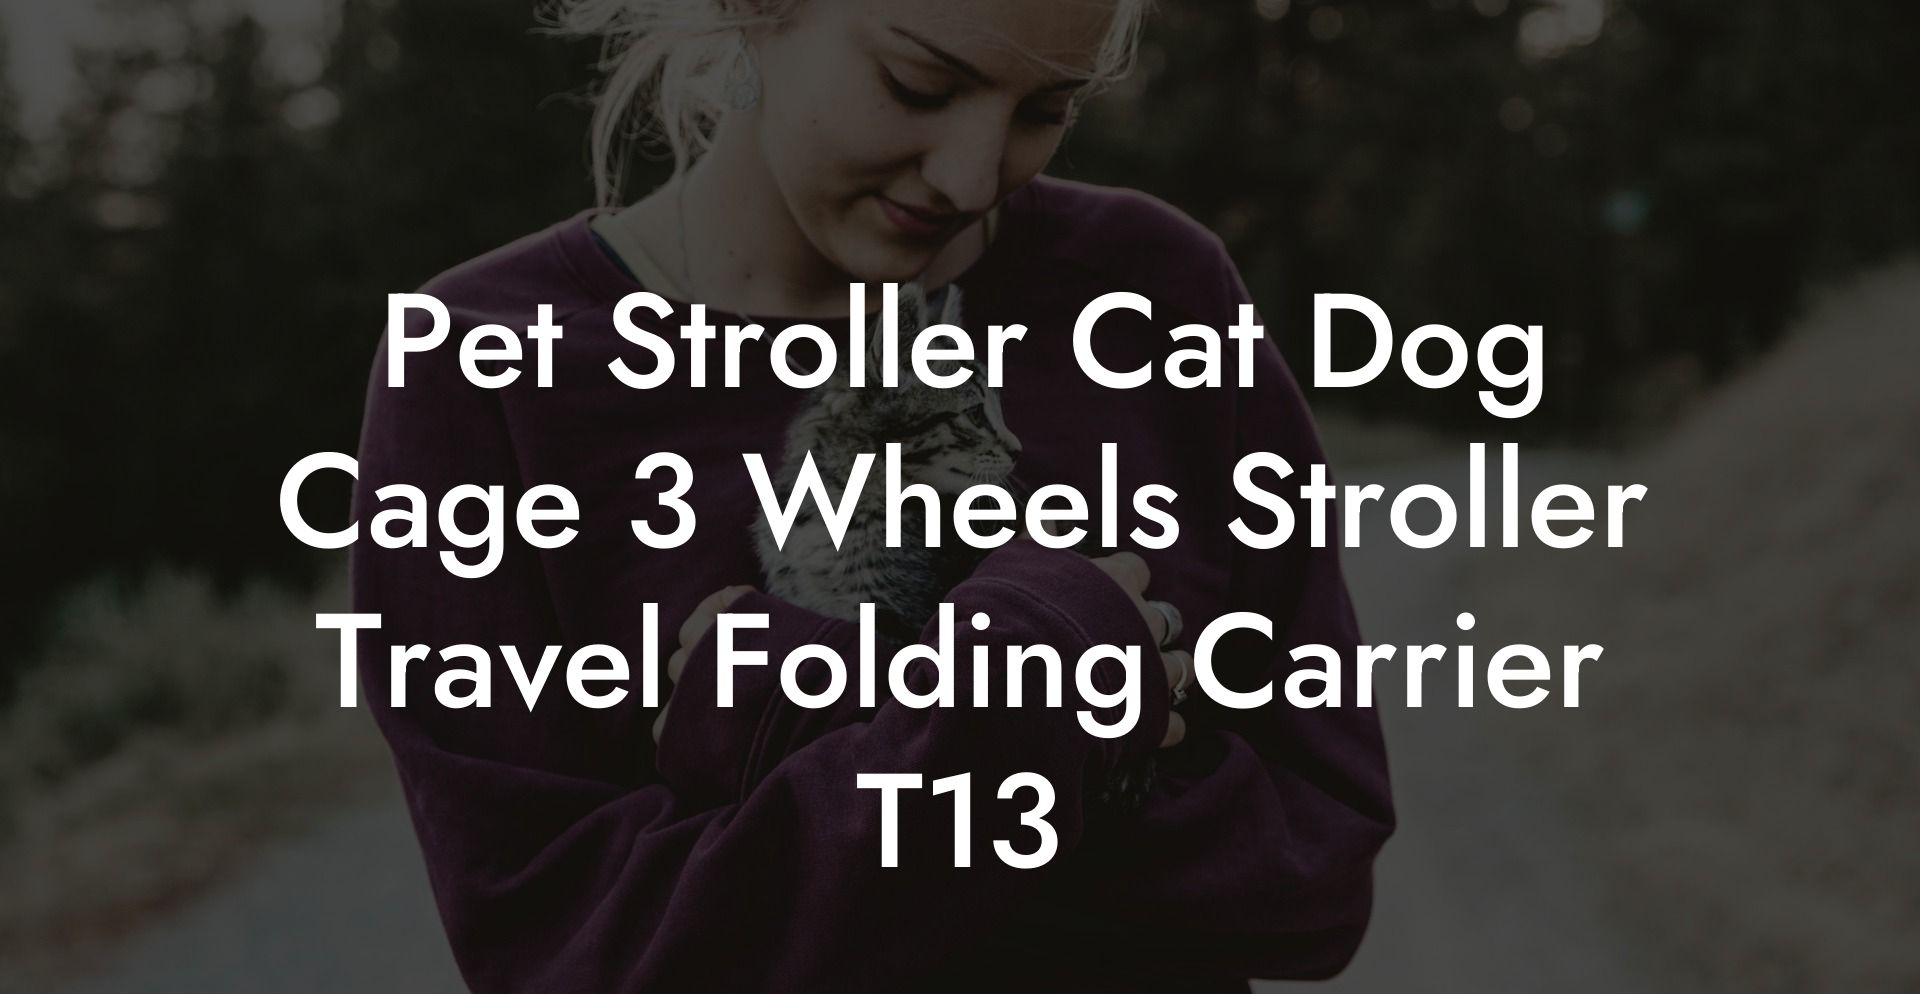 Pet Stroller Cat Dog Cage 3 Wheels Stroller Travel Folding Carrier T13